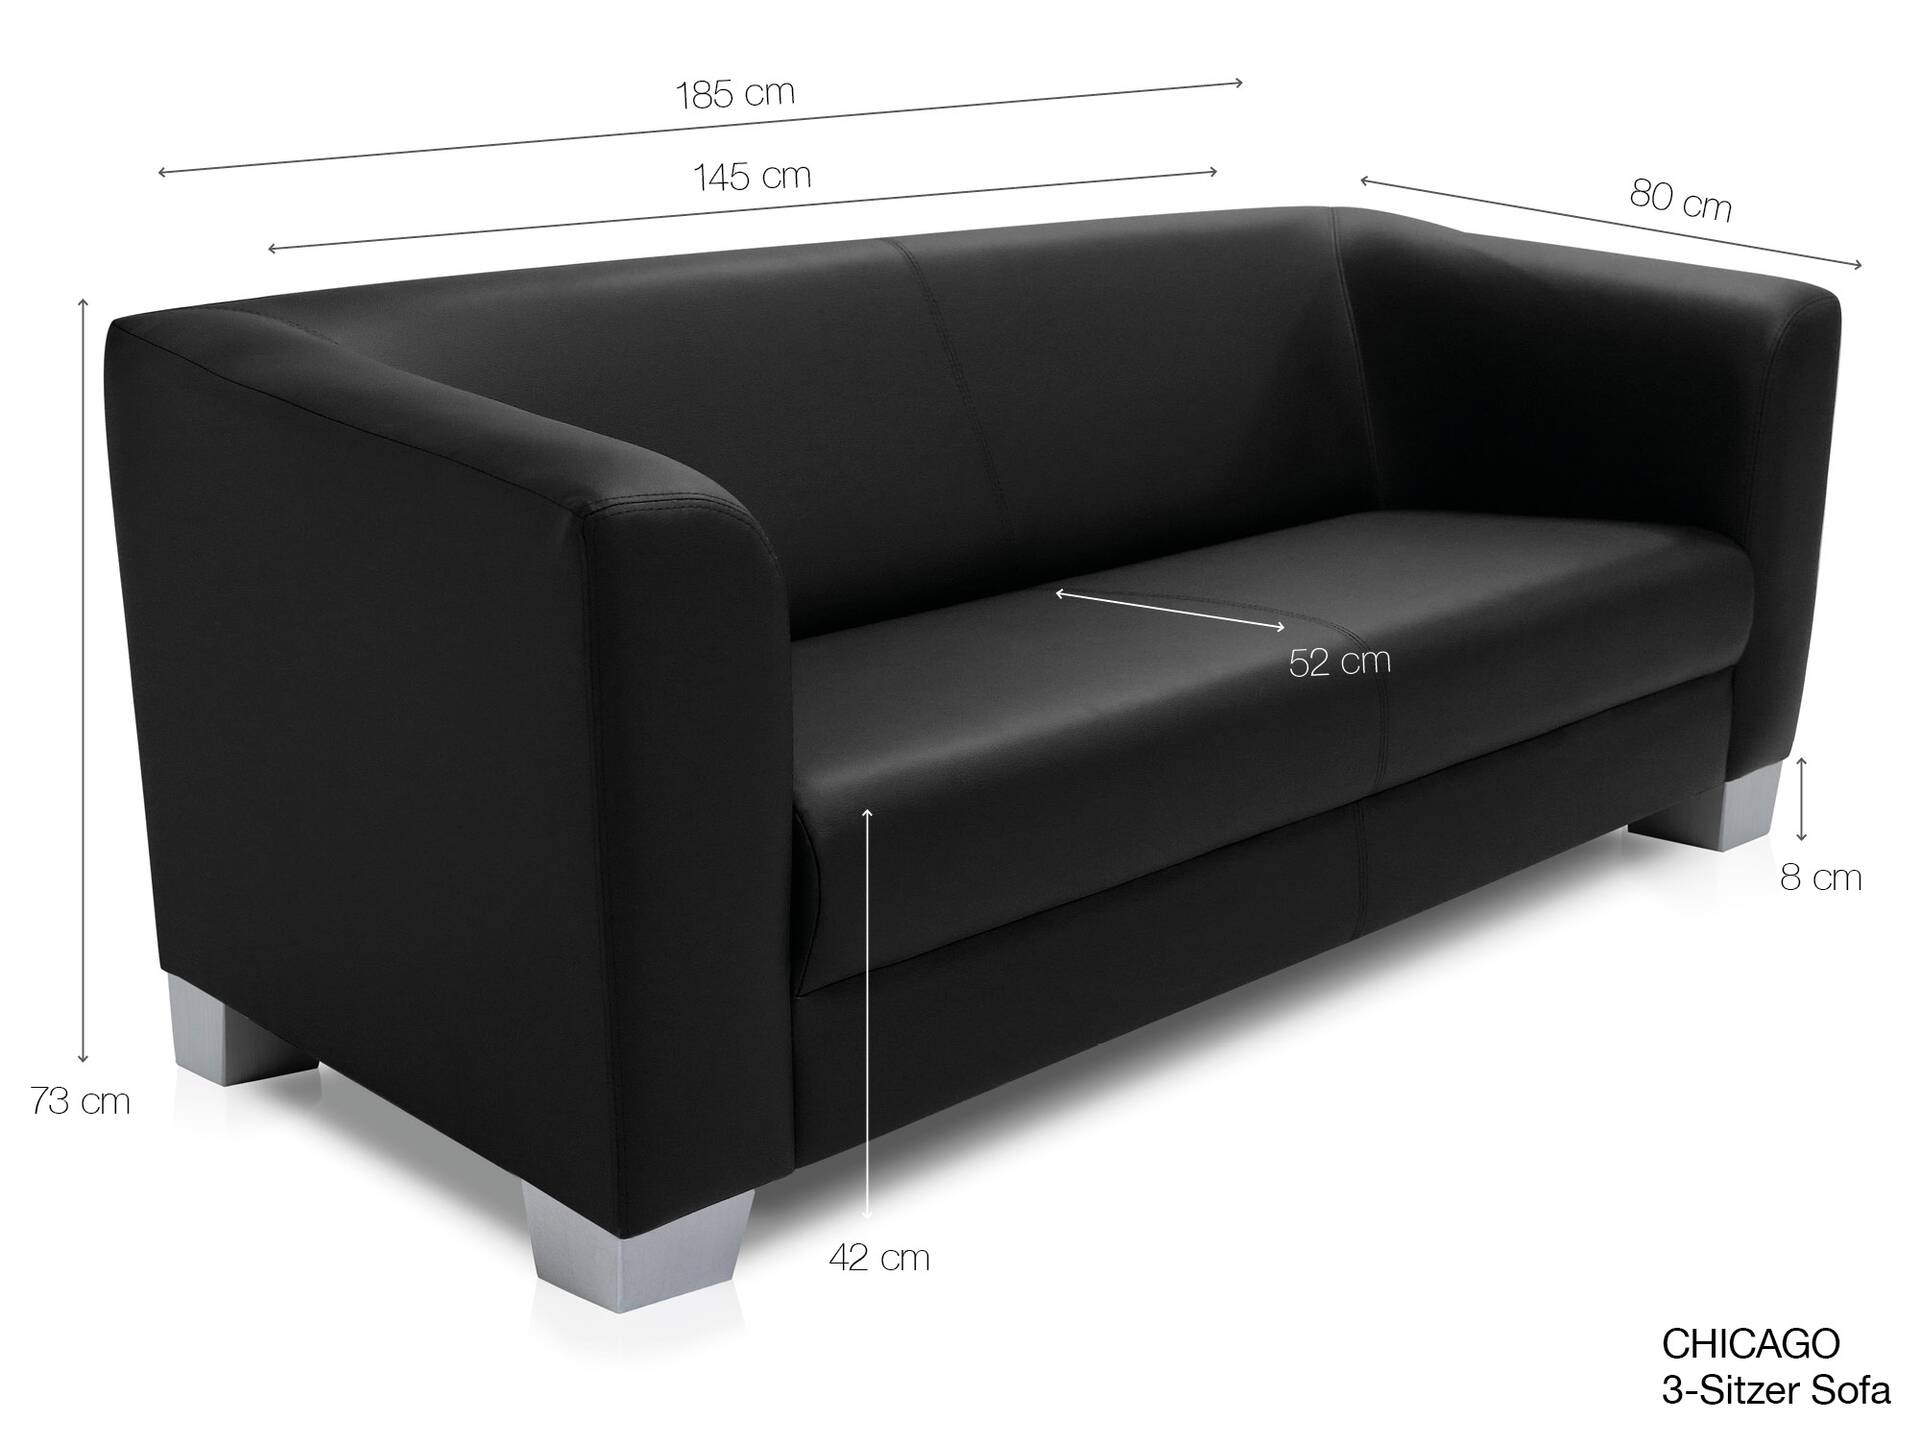 CHICAGO 3-Sitzer Sofa, Material Kunstleder weinrot